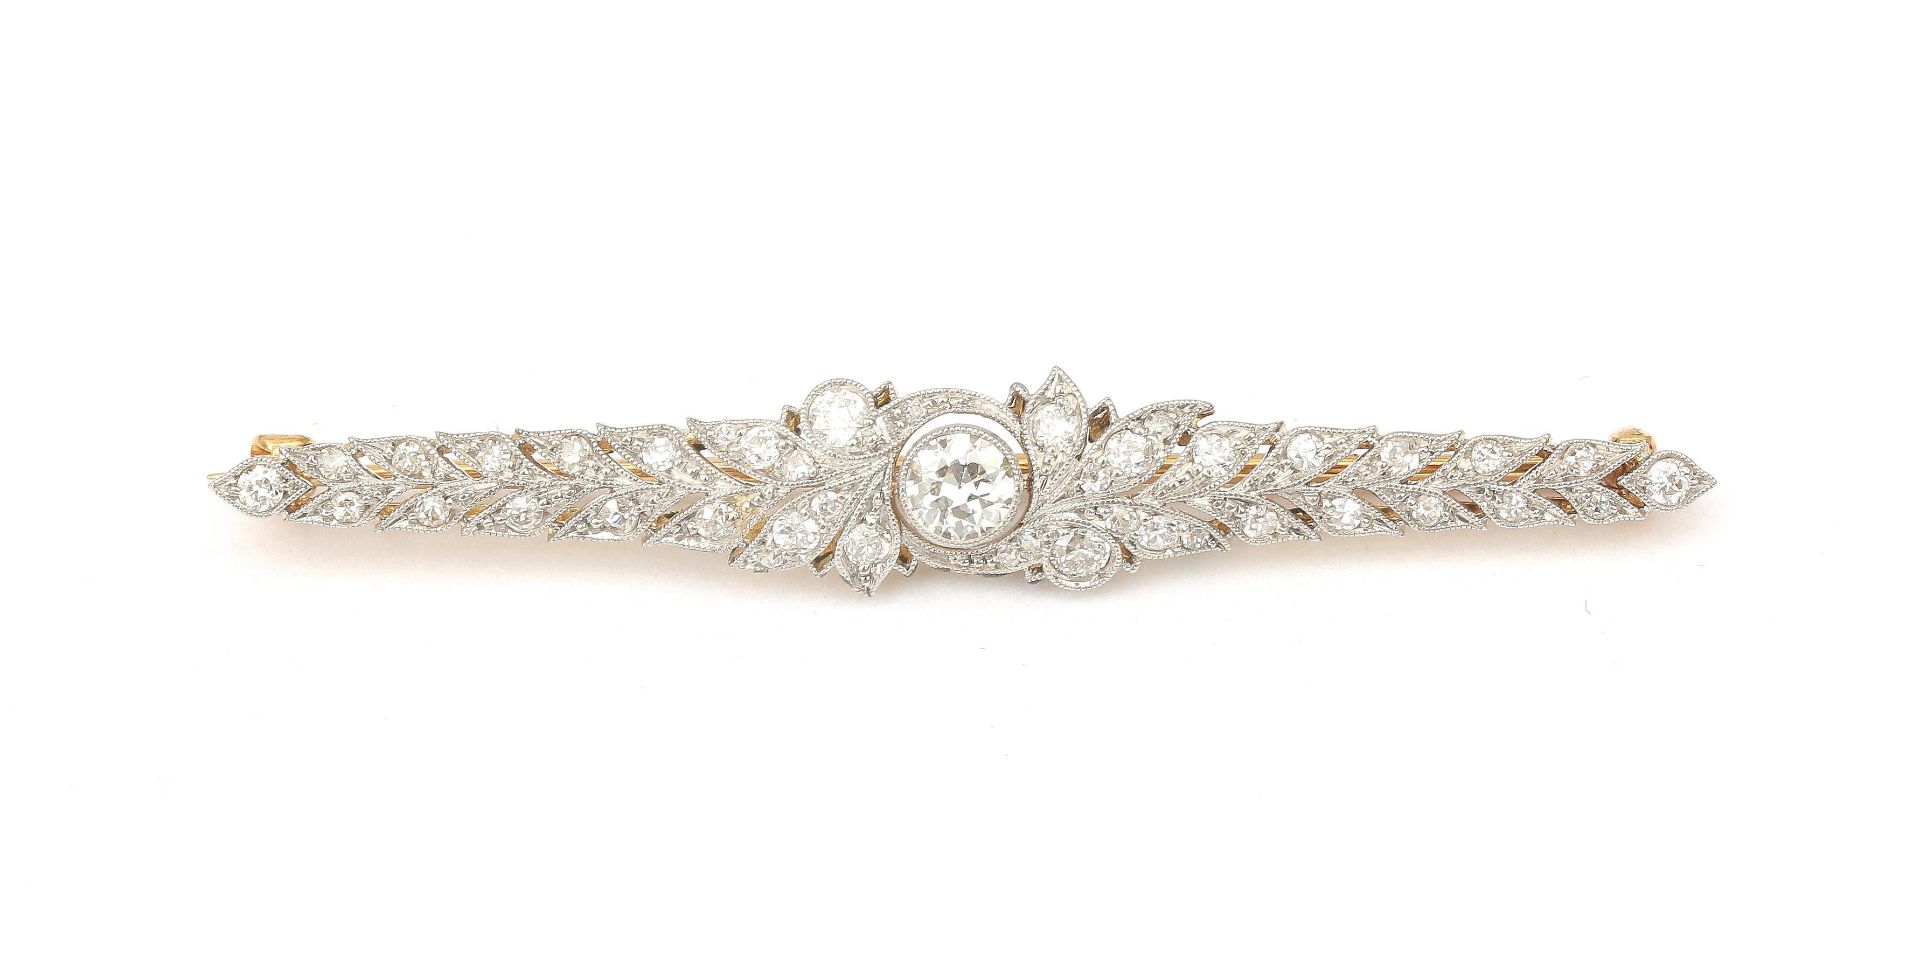 An 18 karat and platinum Belle Epoque diamond bar brooch